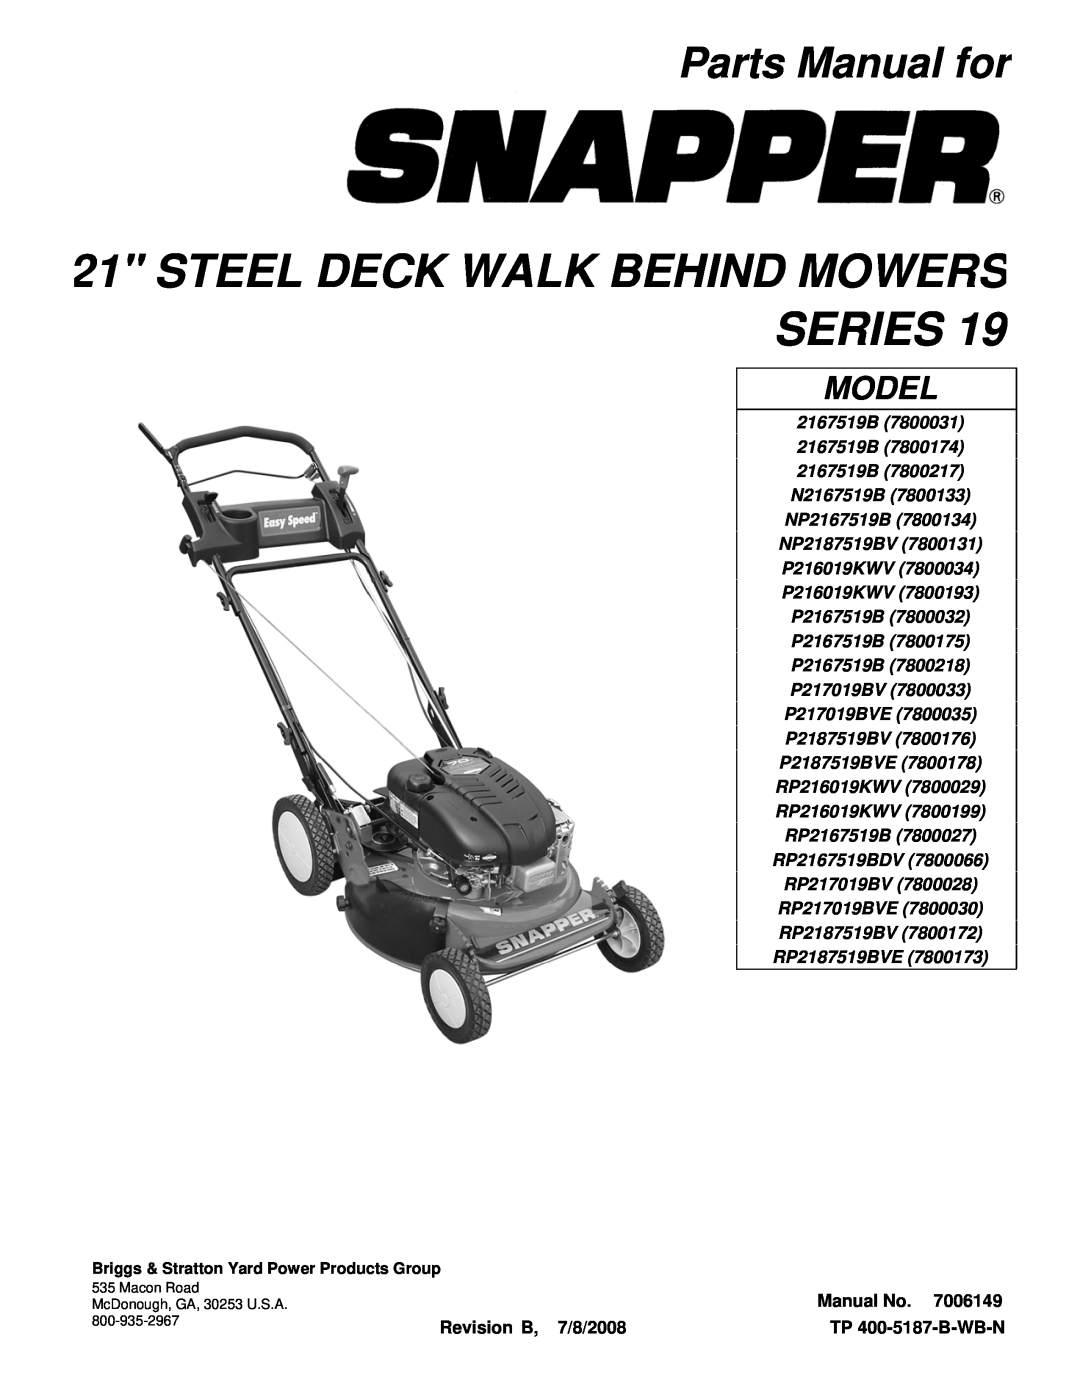 Snapper SERIES 19 manual Parts Manual for, Steel Deck Walk Behind Mowers Series, Model 